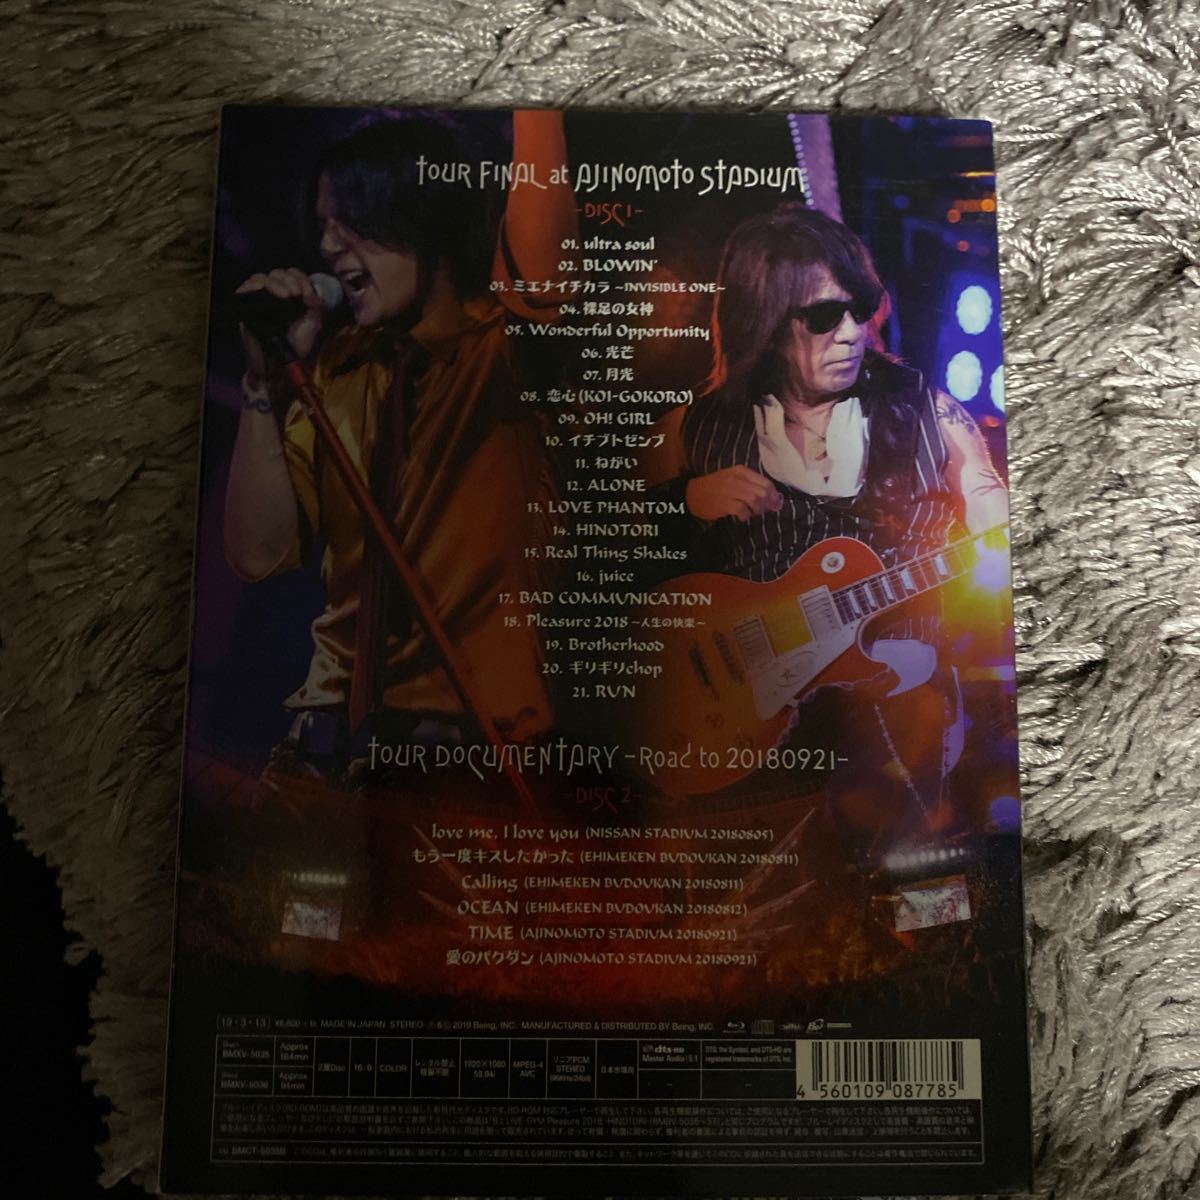 Bz LIVE-GYM Pleasure 2018 -HINOTORI- (BD) [Blu-ray]